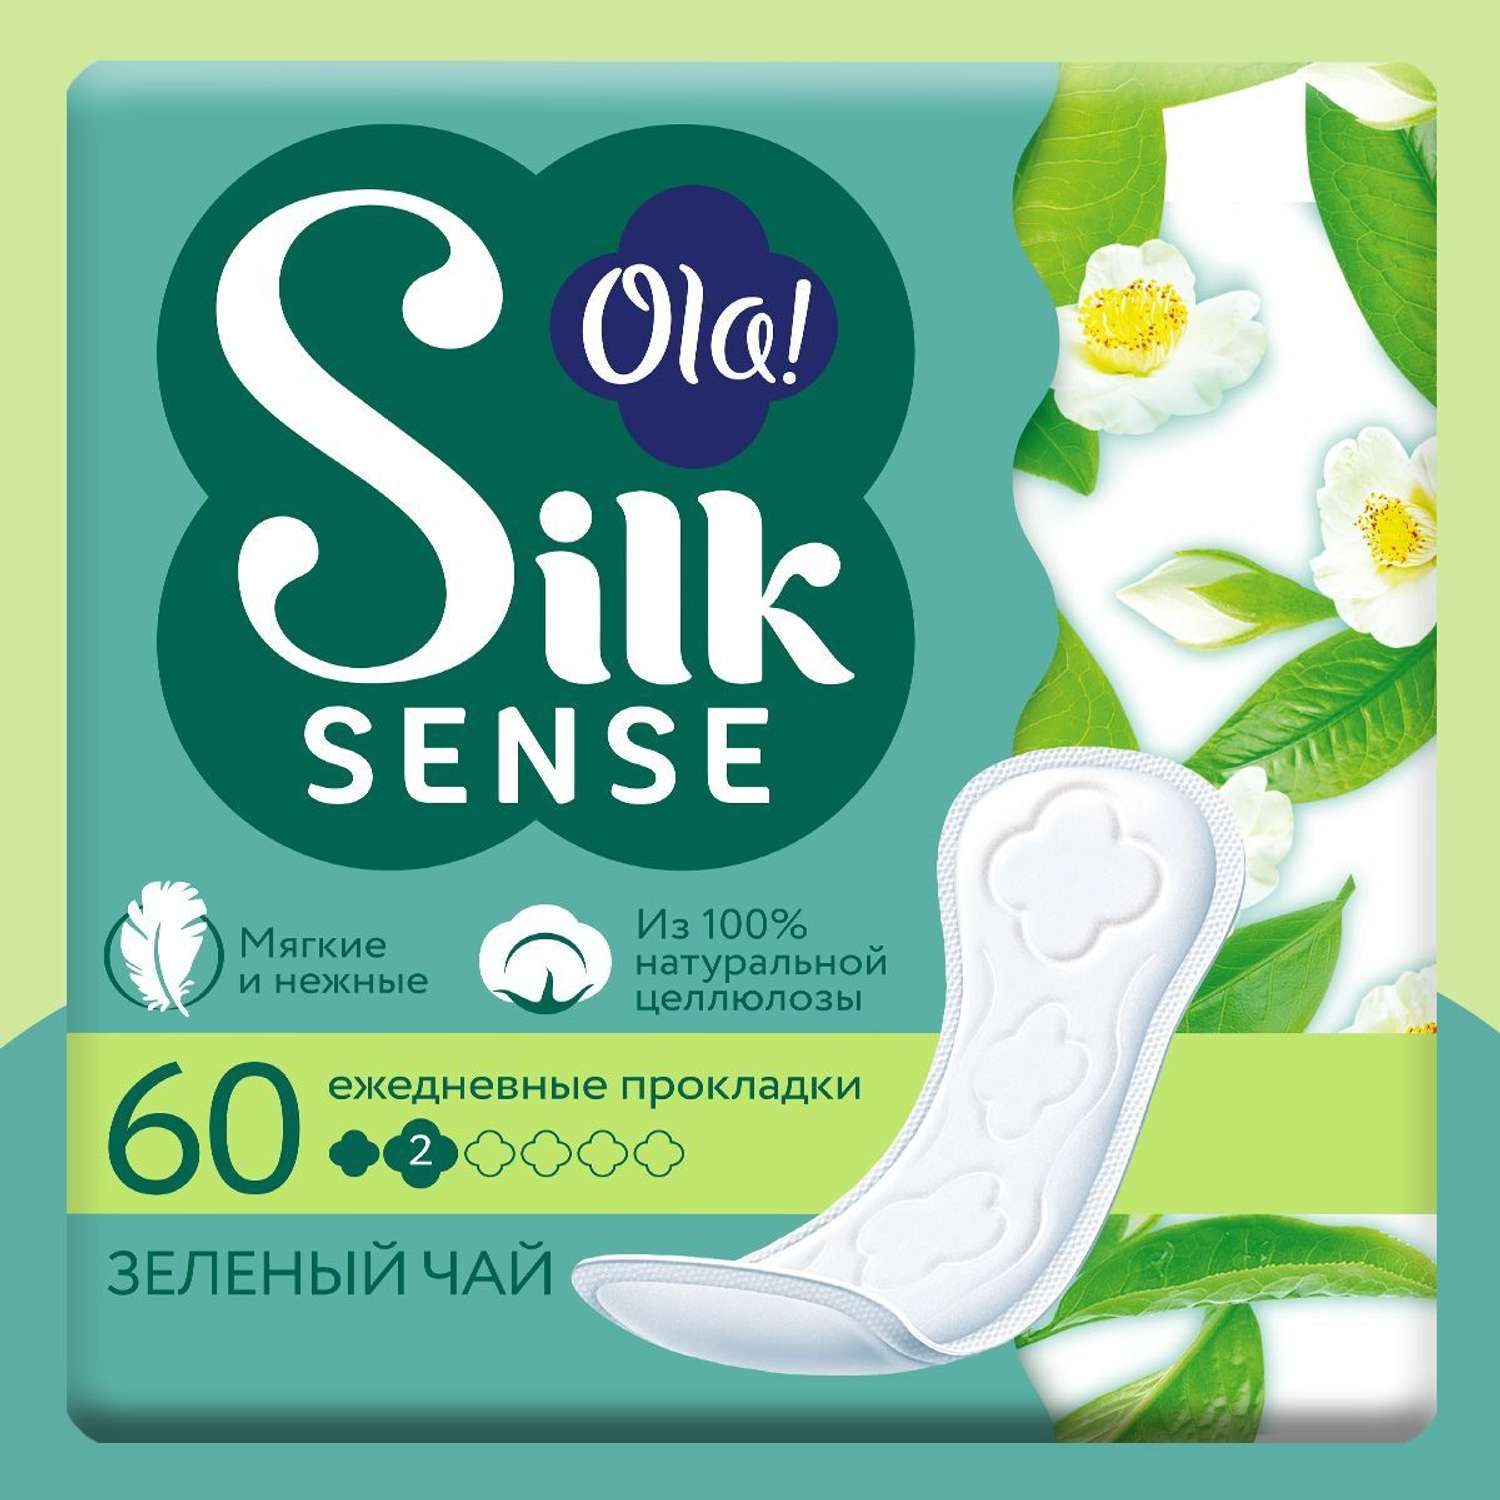 Ежедневные прокладки Ola! Silk Sense мягкие аромат Зеленый чай 60 шт - фото 1